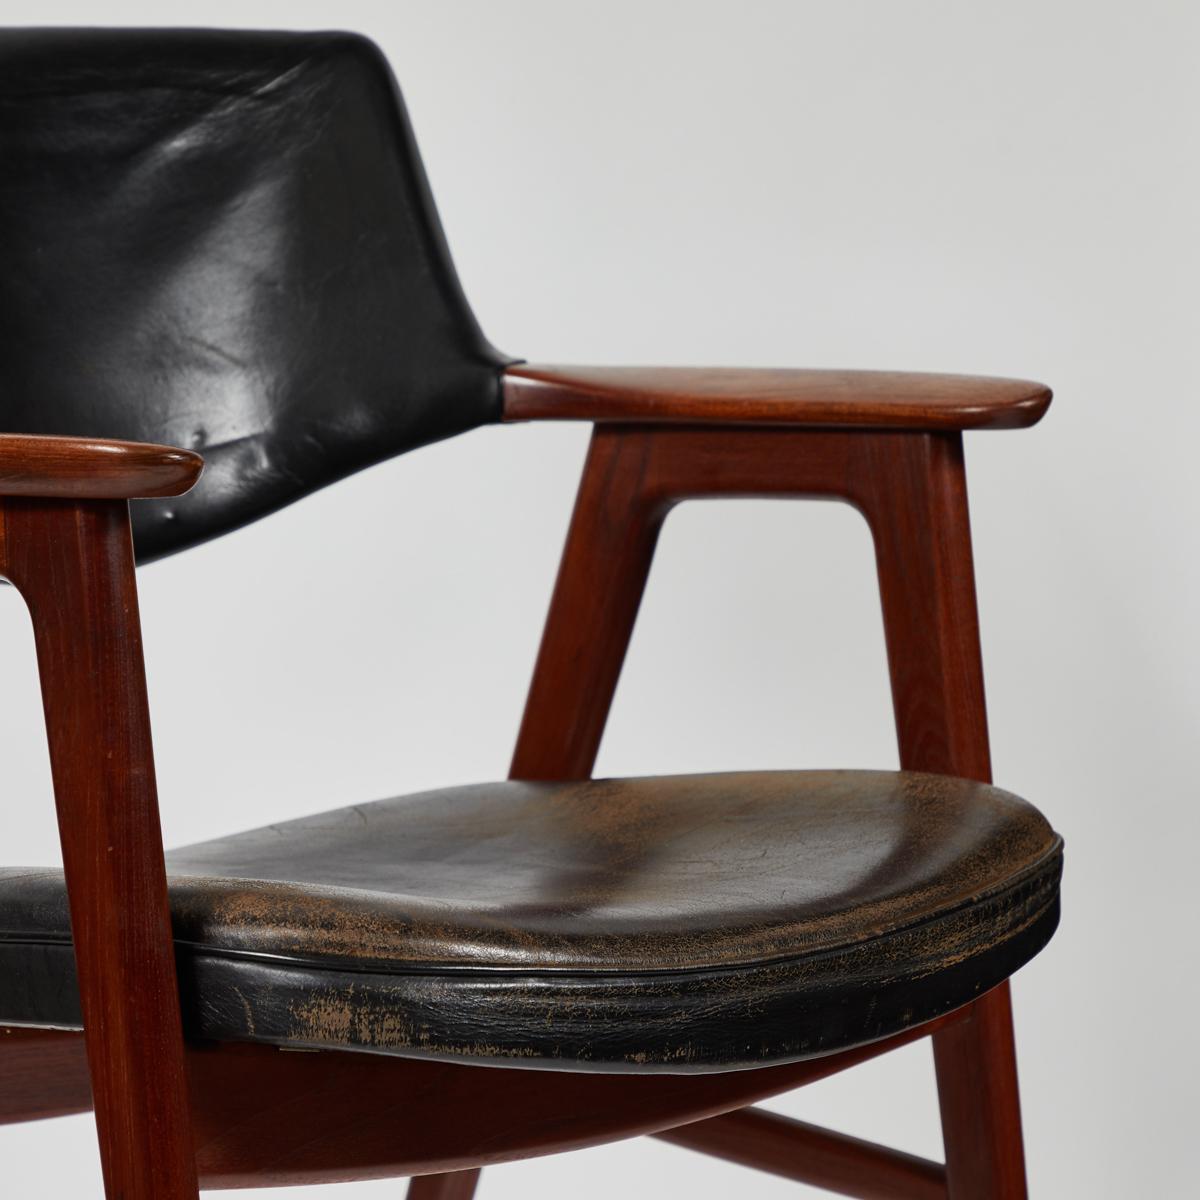 Fauteuil ou chaise de bureau en acajou, de style moderne du milieu du siècle, recouvert de cuir noir.